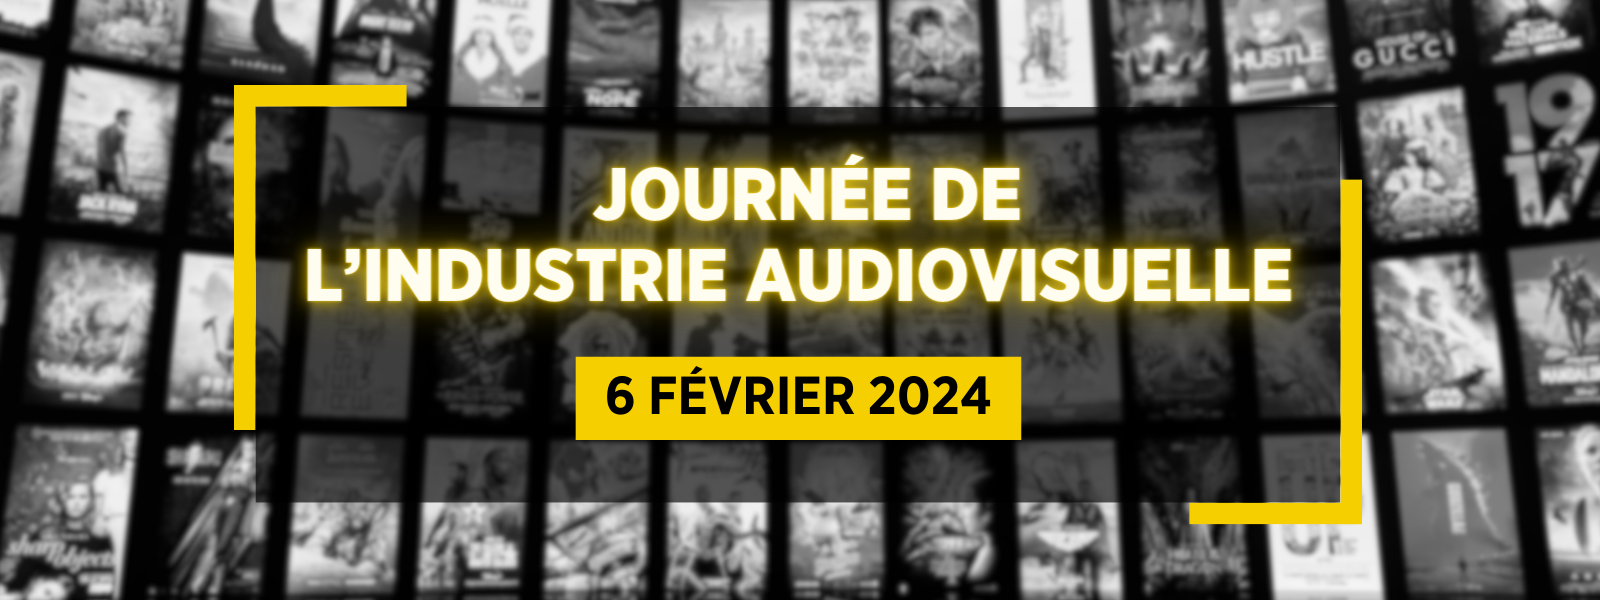 Journée de l'industrie audiovisuelle du Québec - 6 février 2024